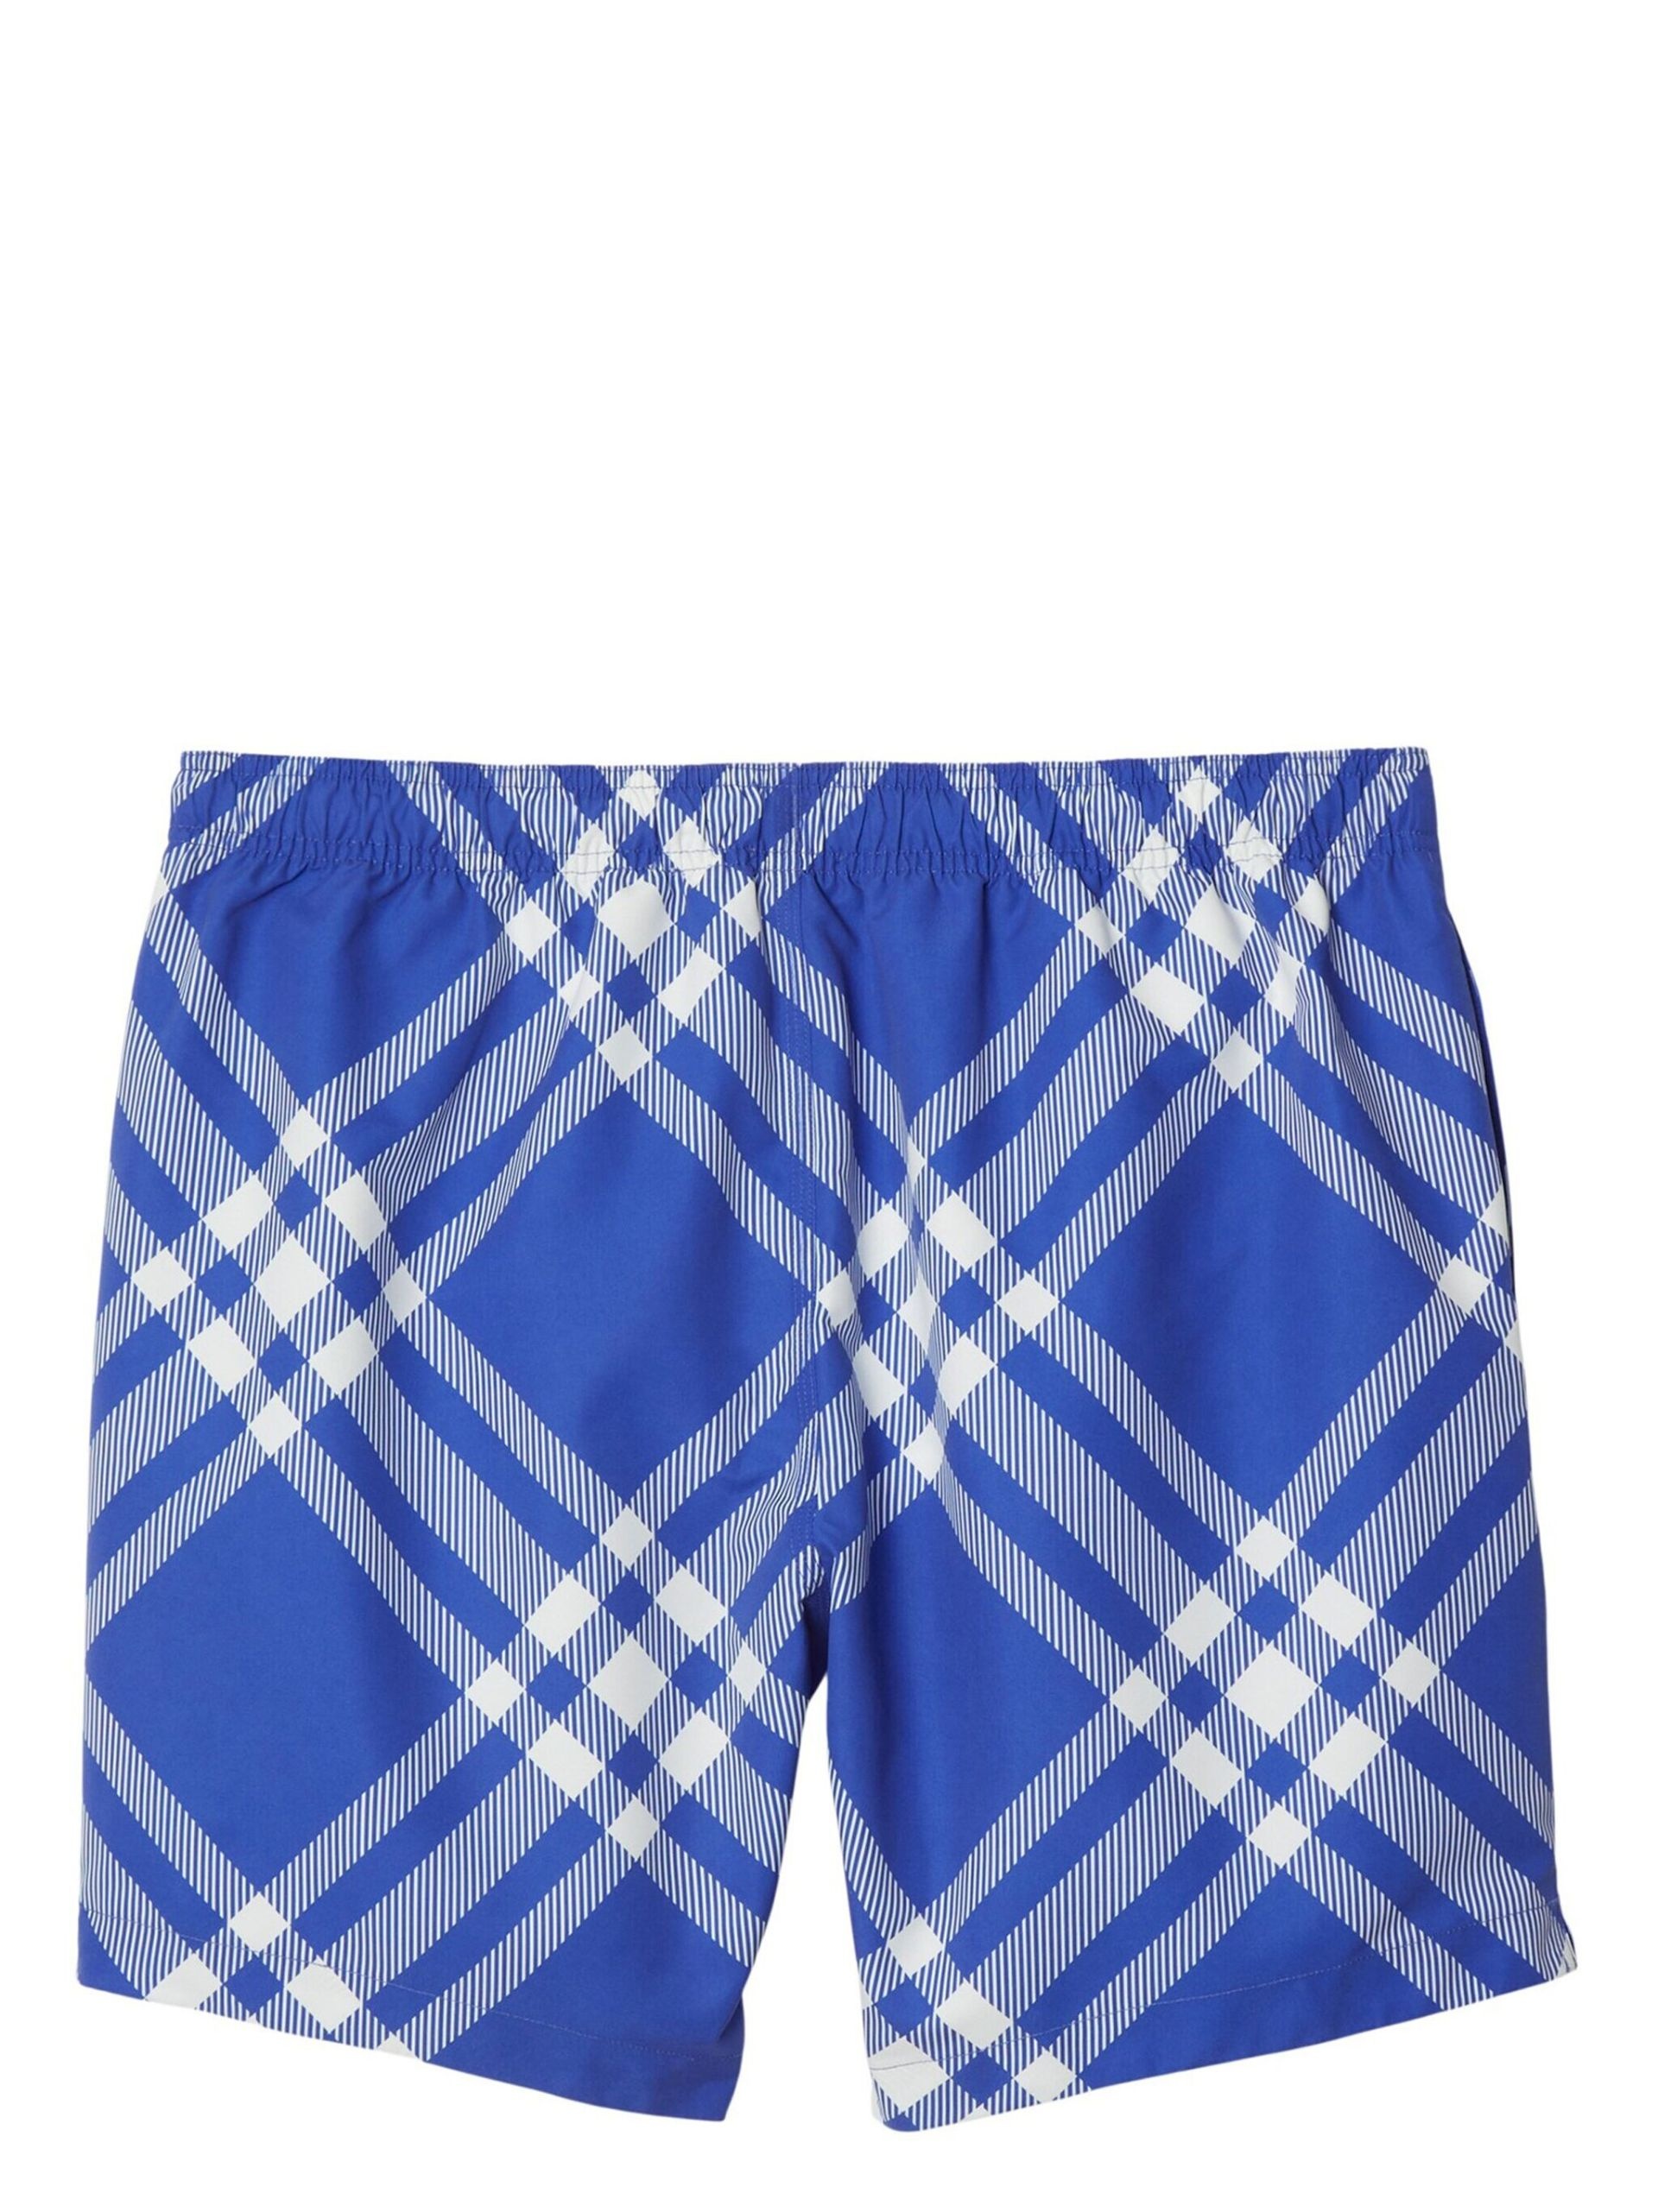 Blue Plaid Check Swim Shorts - 2